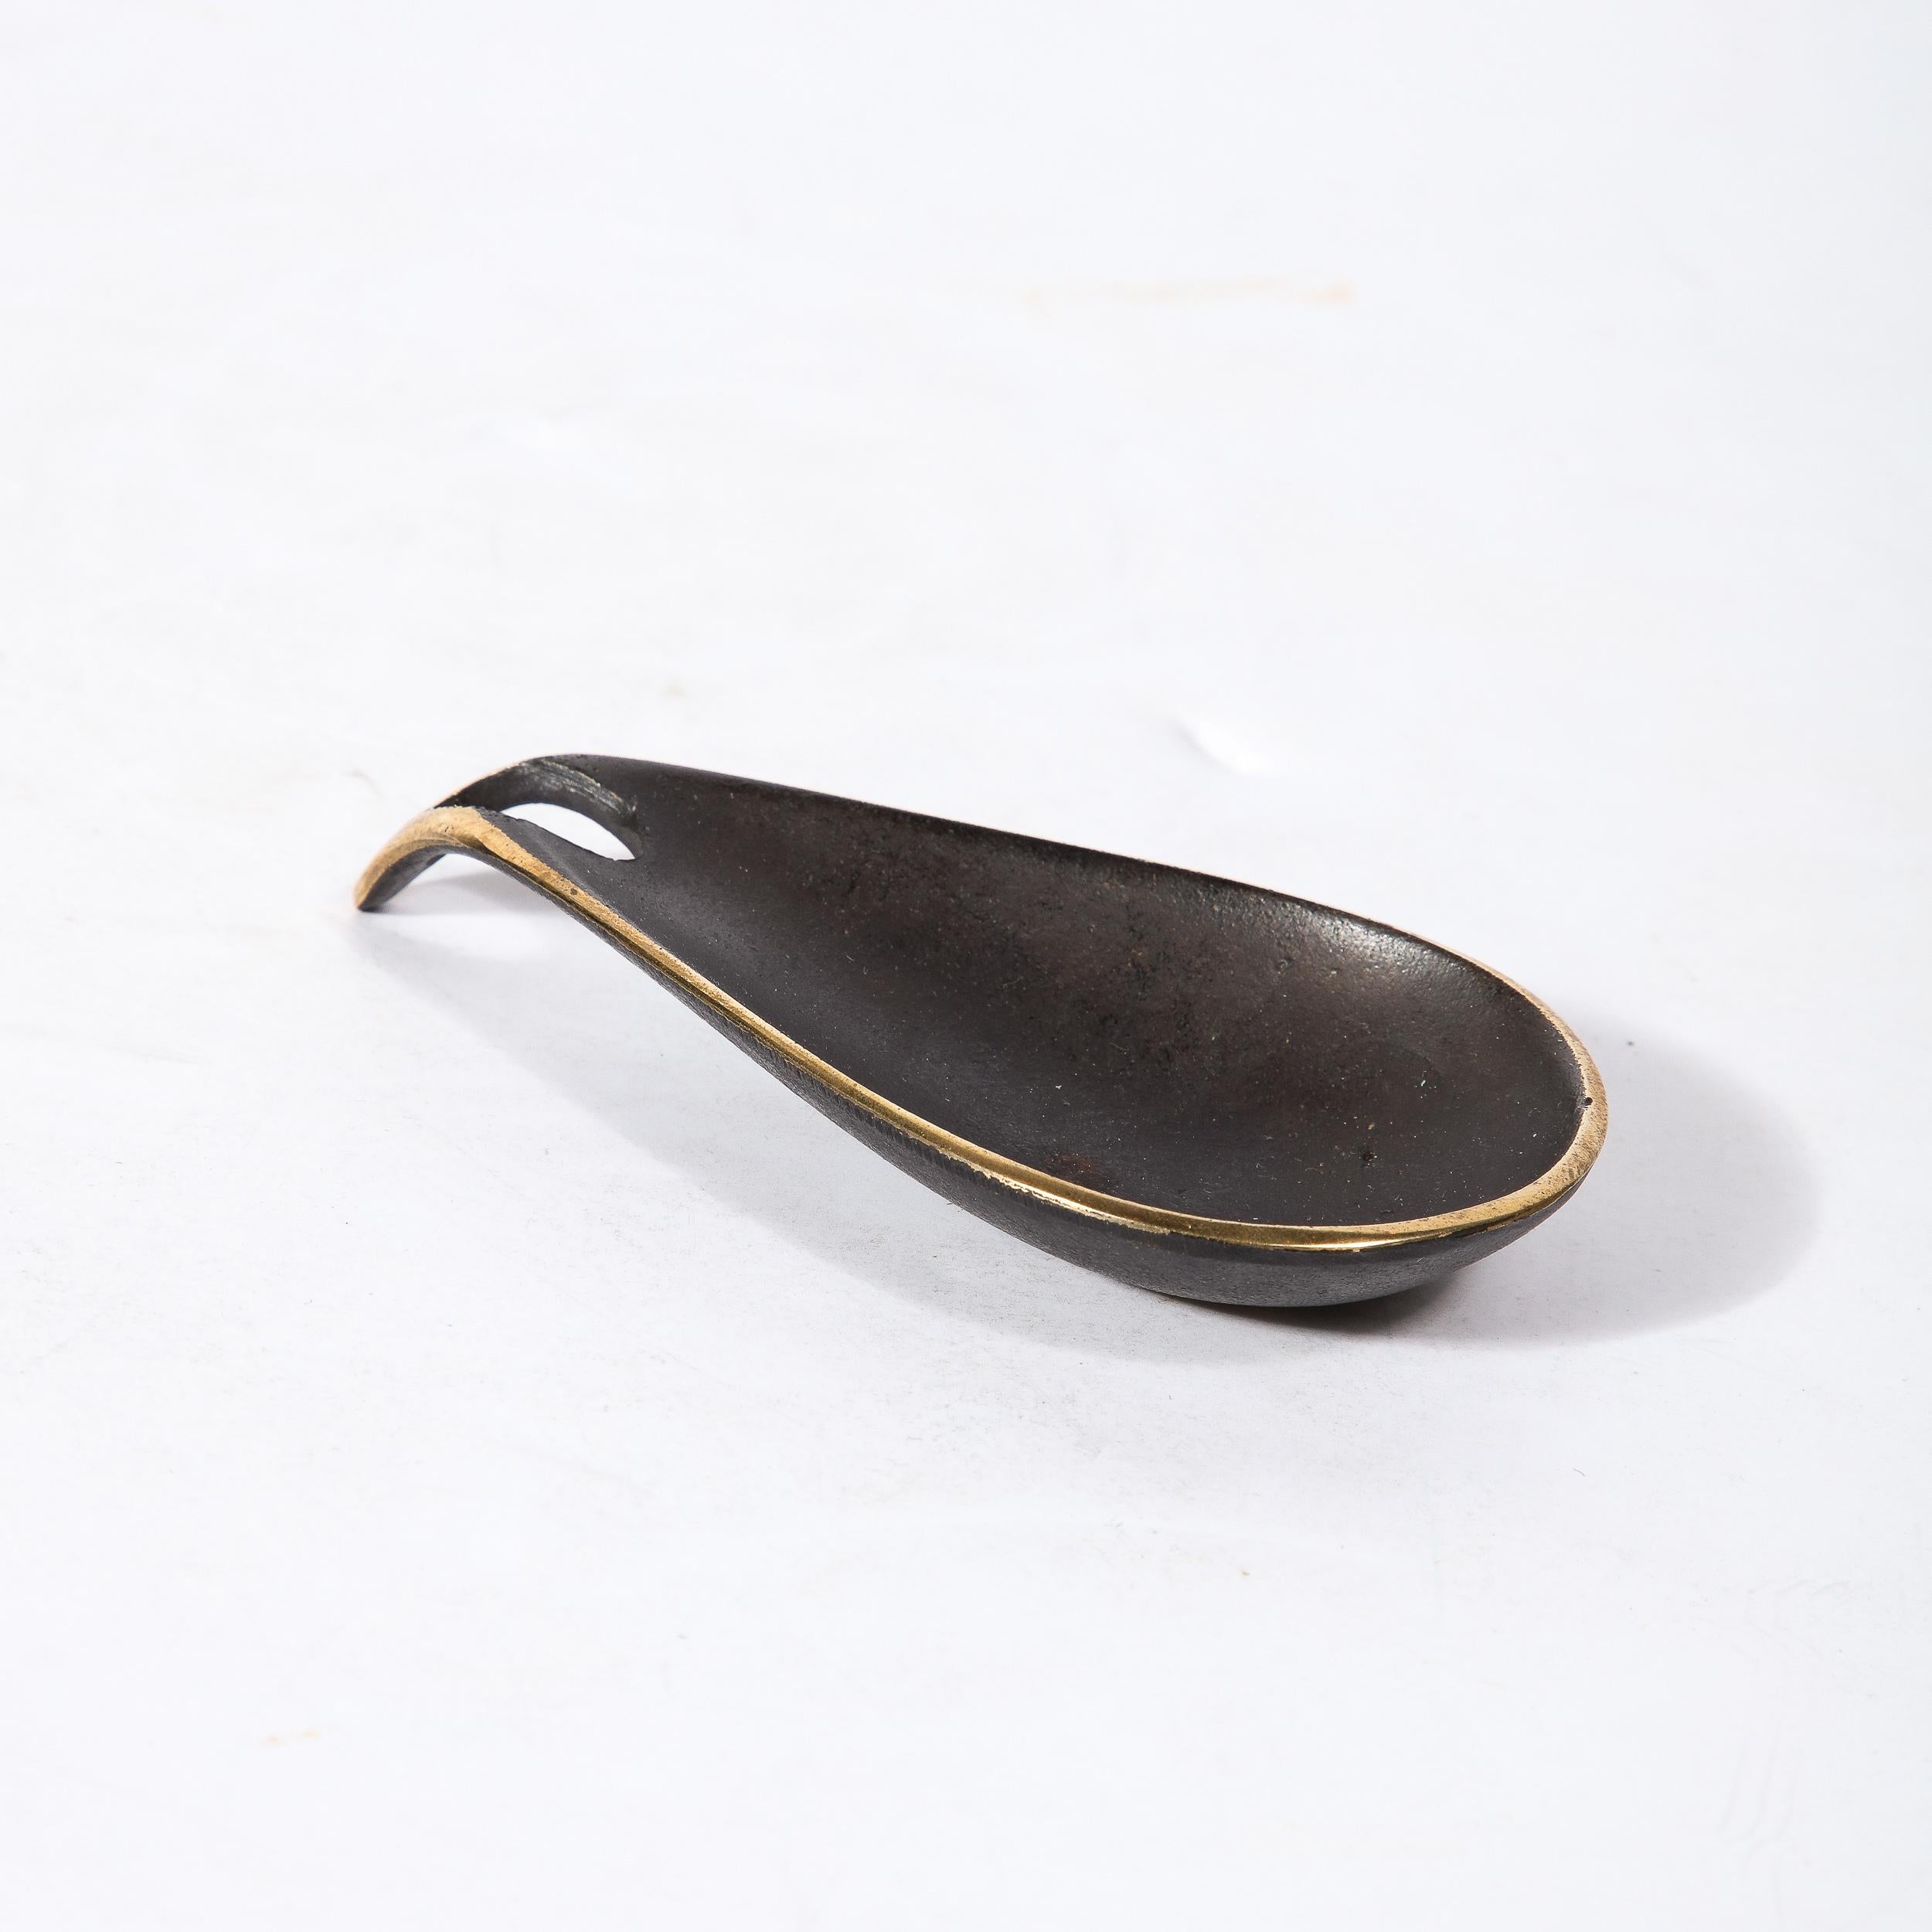 Diese wunderschön gestaltete Teardrop Dish aus patiniertem Messing wurde von dem geschätzten Künstler Carl Aubock hergestellt und stammt aus Österreich, CIRCA 1950. Die Konstruktion in schwarzer Patinierung mit freiliegendem, poliertem Messing, das